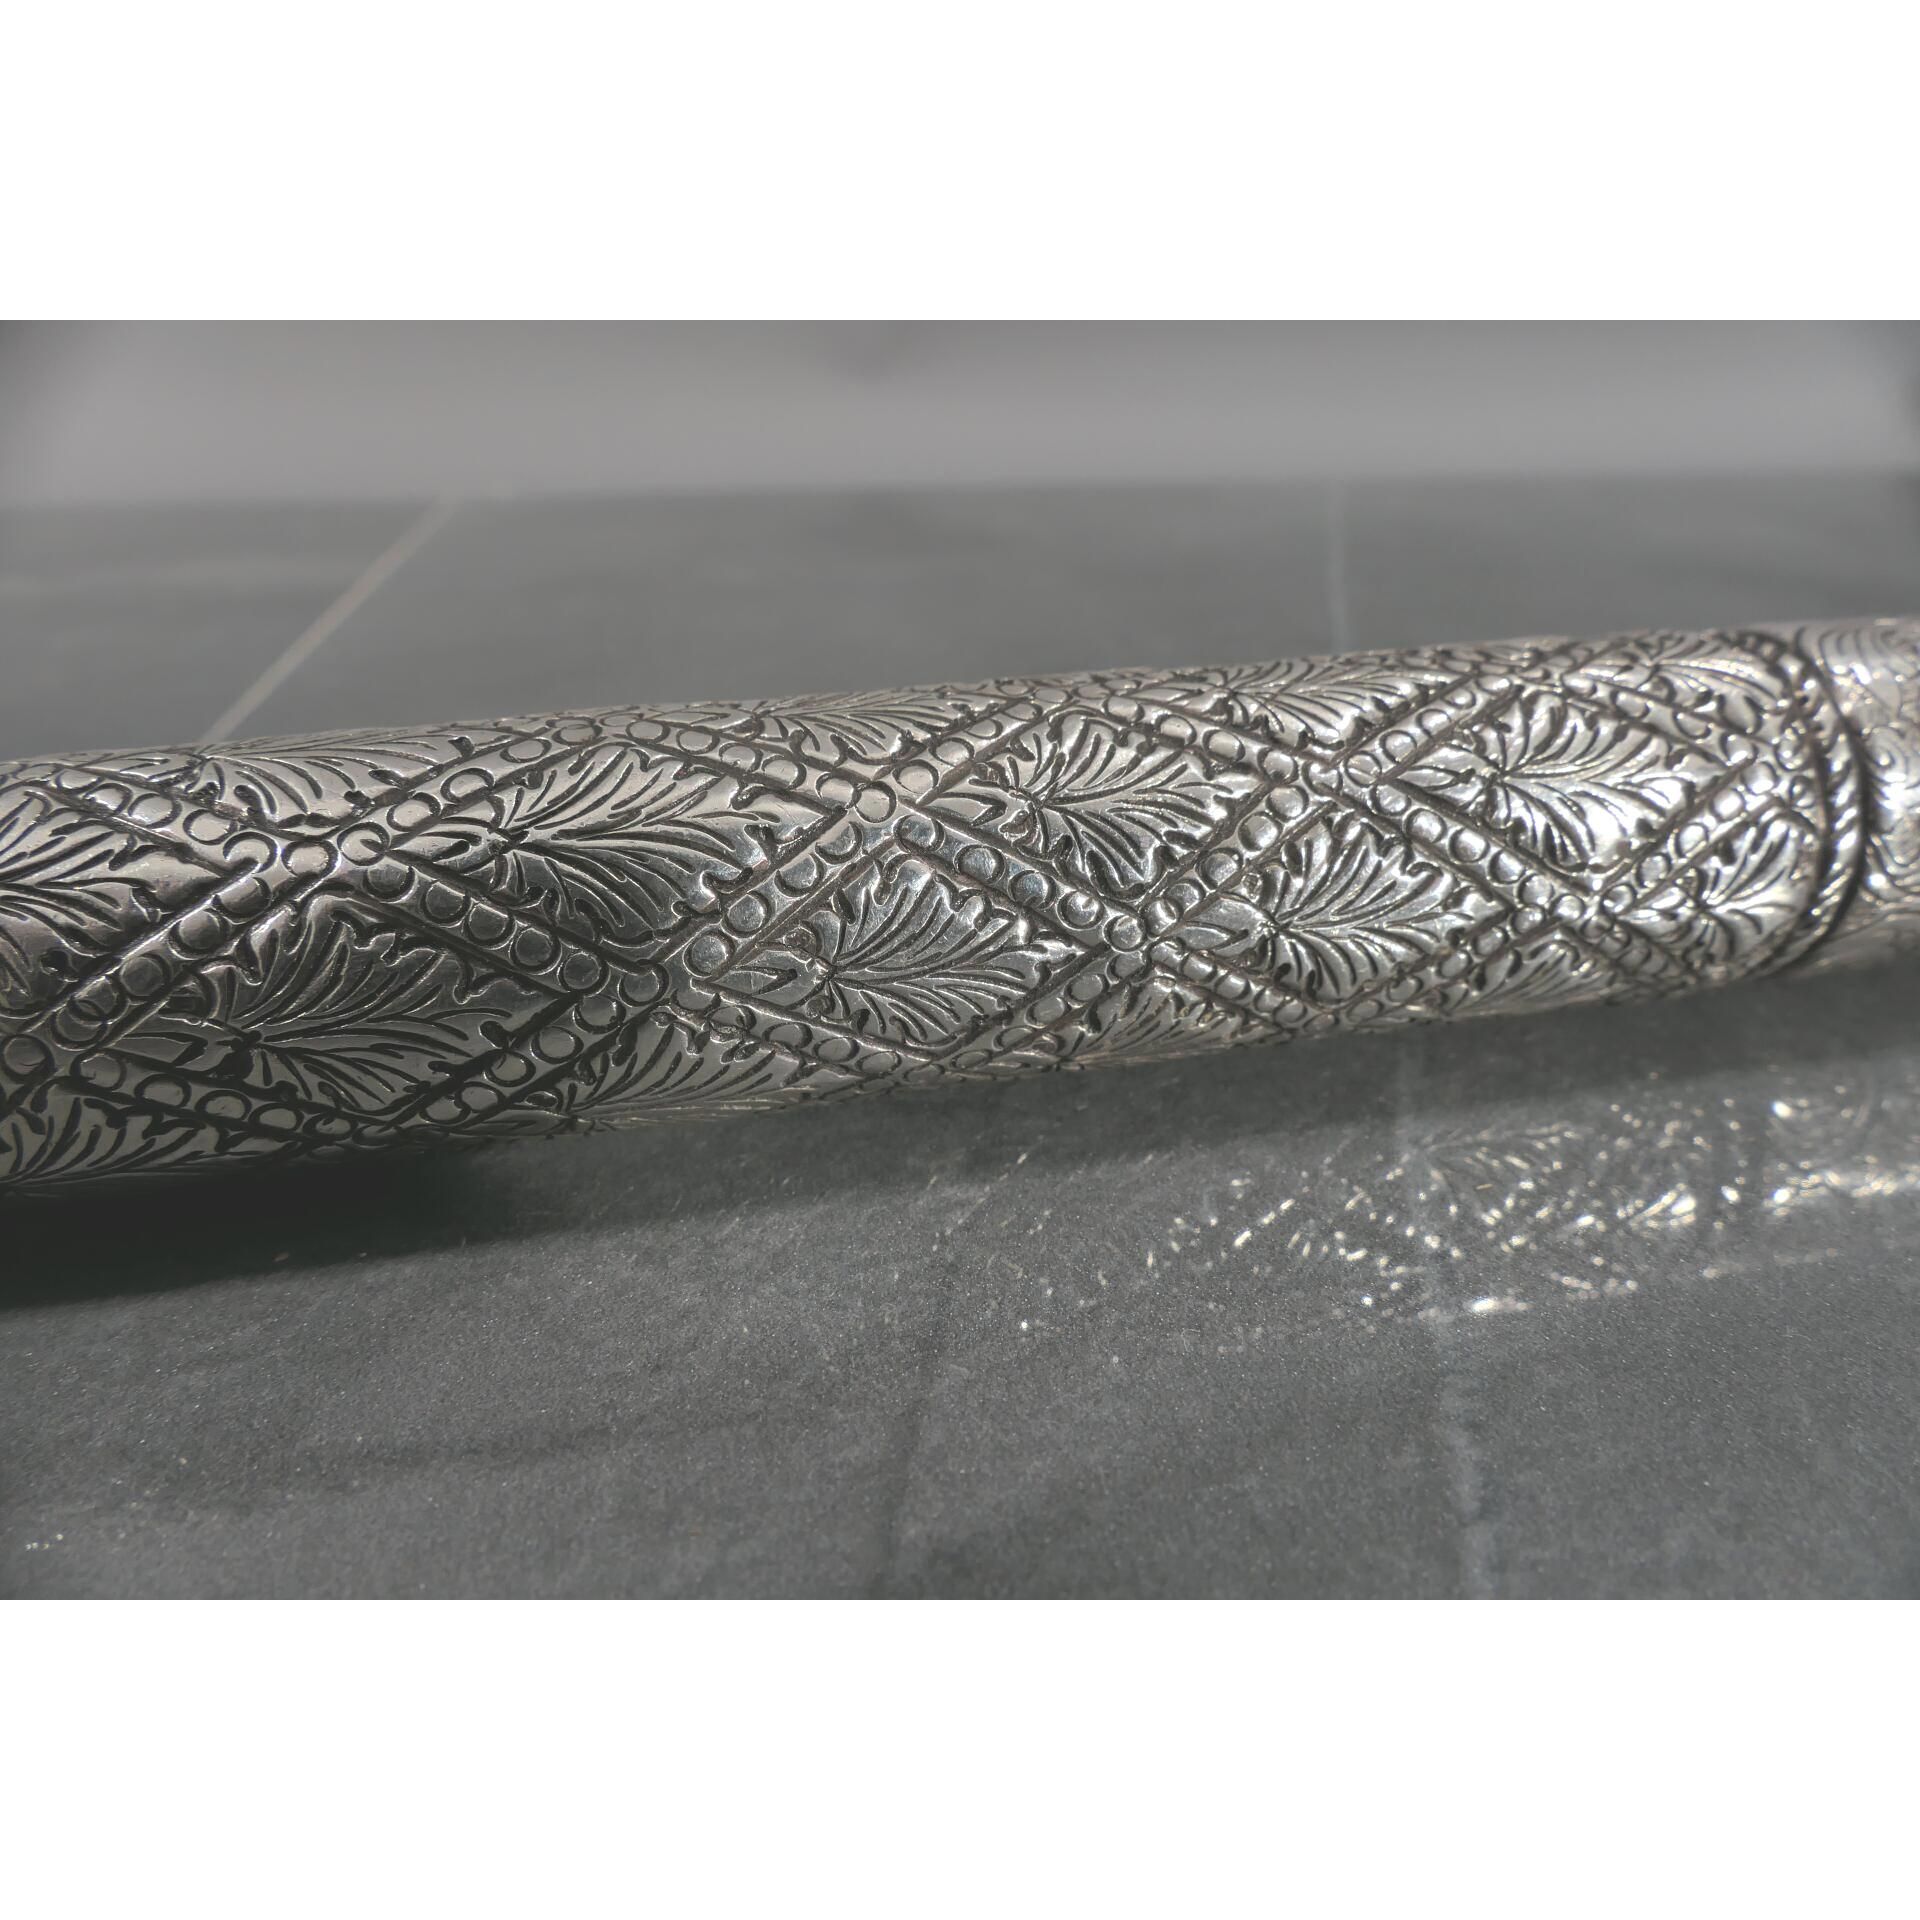 Gehstock mit Entengriffstück, 800er Silber tlw. von Hand gravierter, hohlgegossener, verschraubter, - Bild 5 aus 18